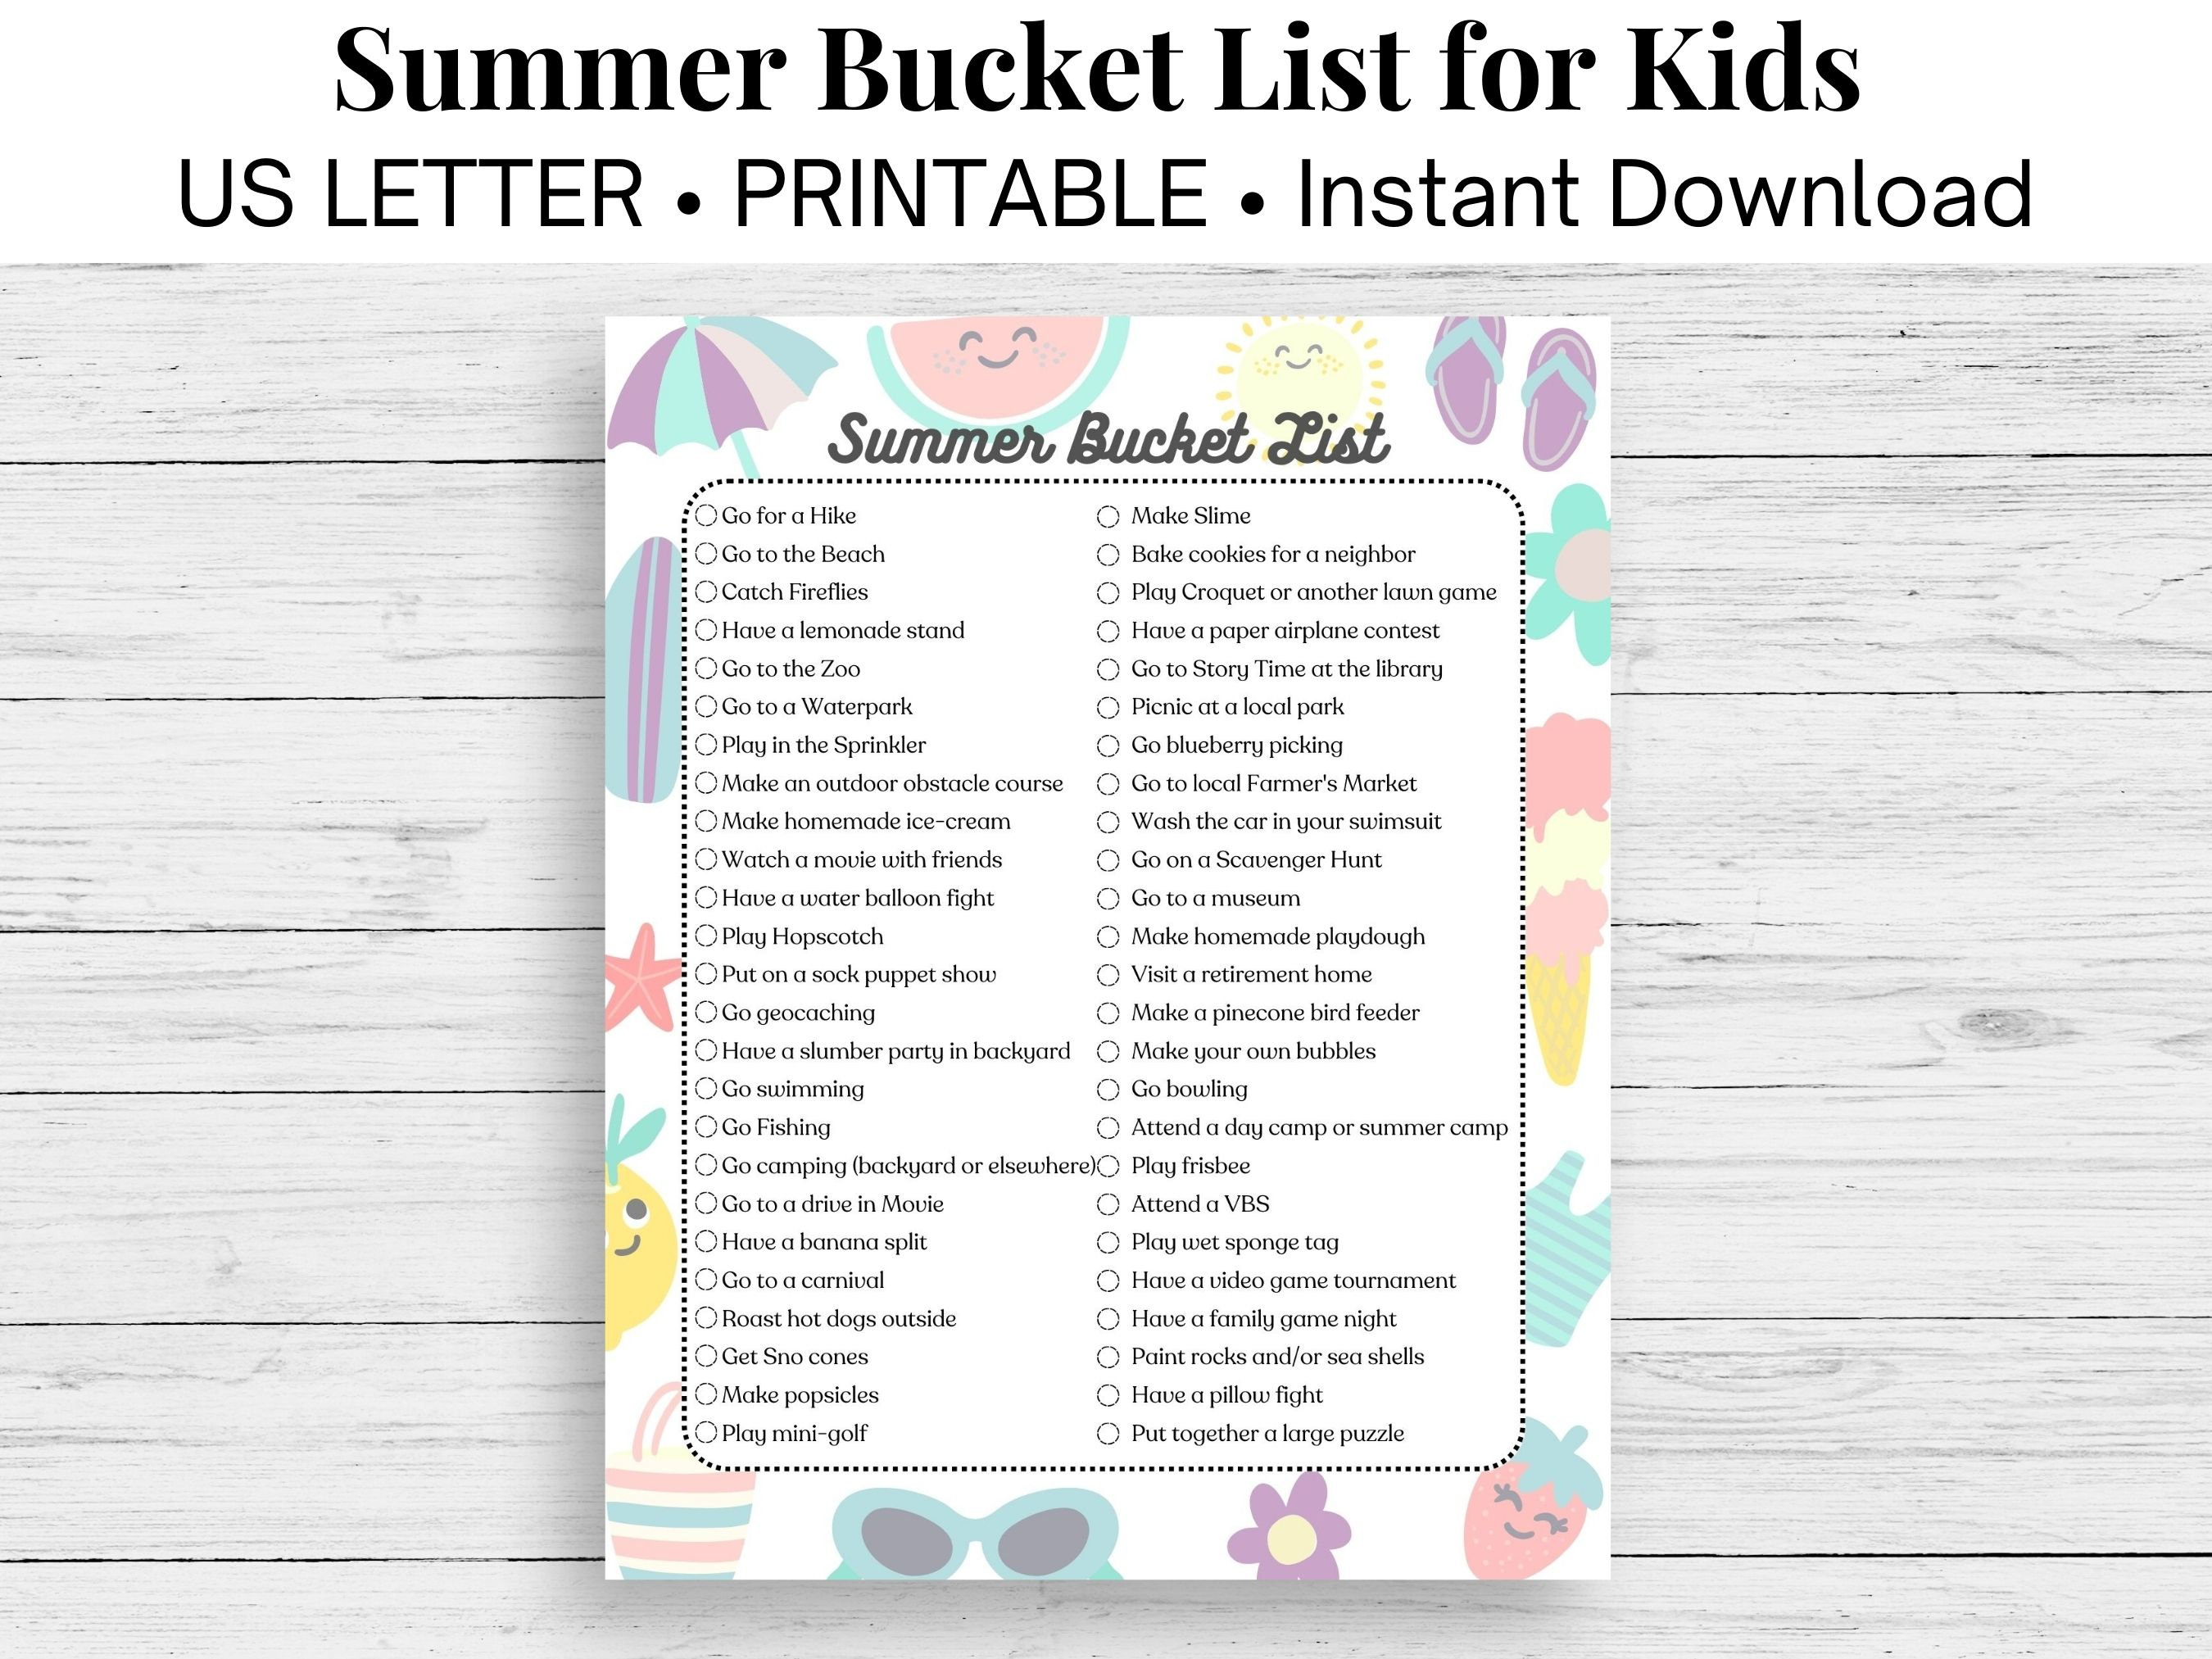 Summer Bucket List for Kids, Kids Activities, List of Summer Activities,  Fun Indoor and Outdoor Activities for Kids, Bucket List Printable 